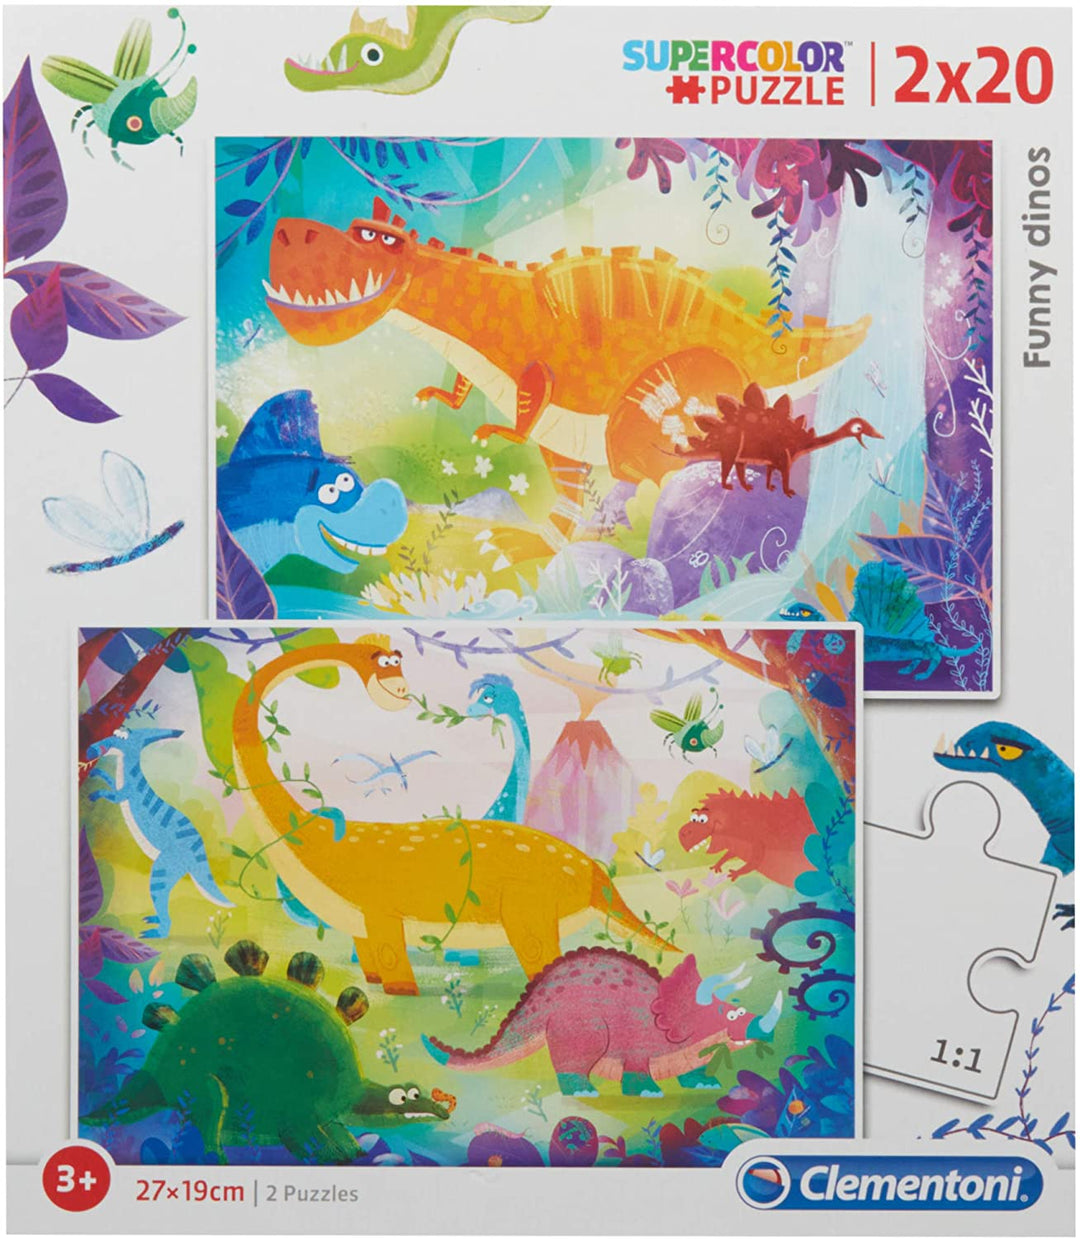 Clementoni - 24755 - Supercolor Puzzle for children-Dinosaur-2 x 20 Pieces